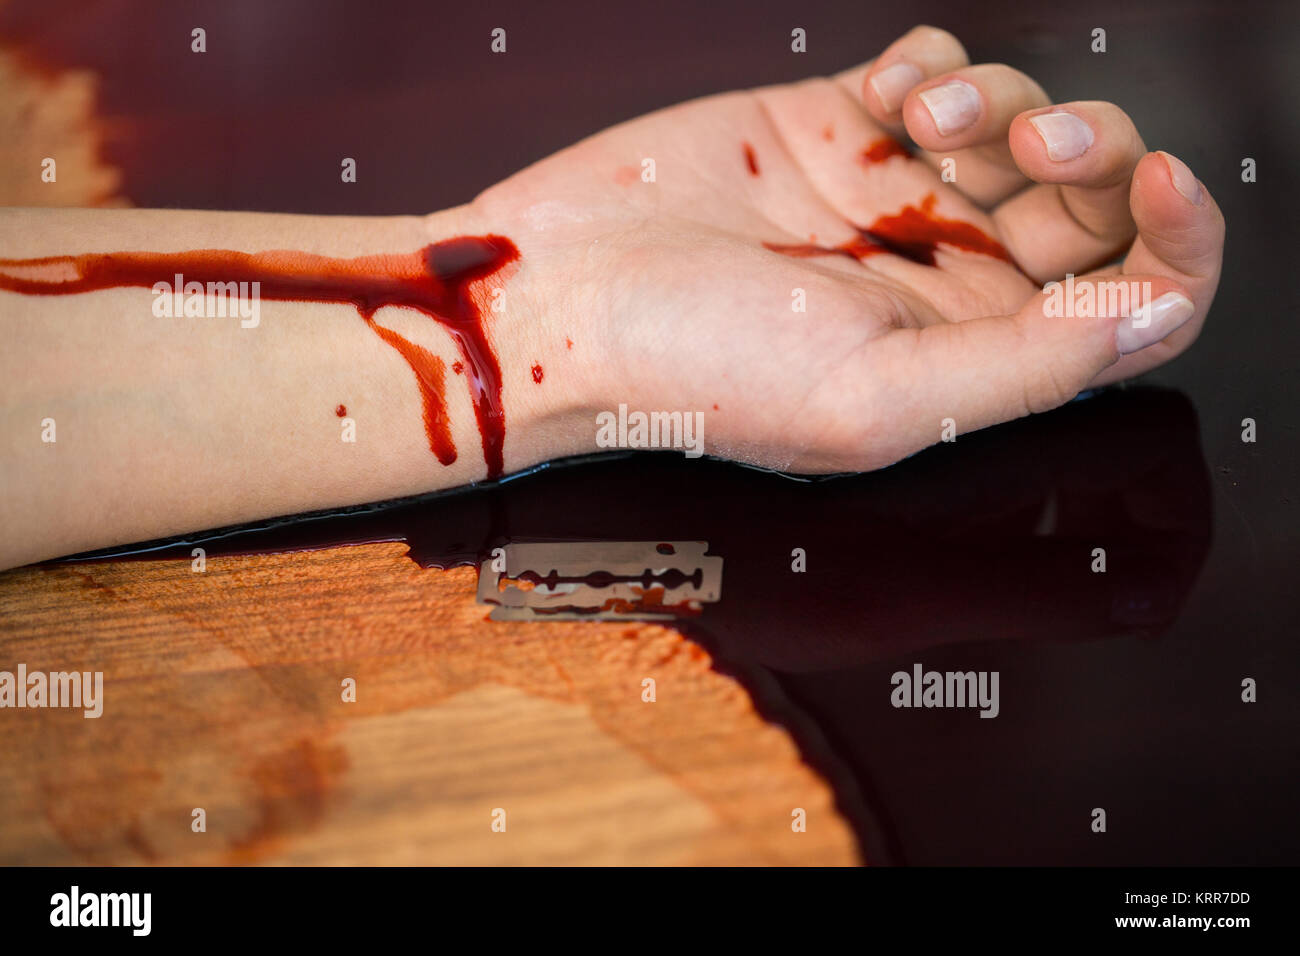 Donna morta la mano nel sangue sul pavimento in corrispondenza della scena del crimine Foto Stock